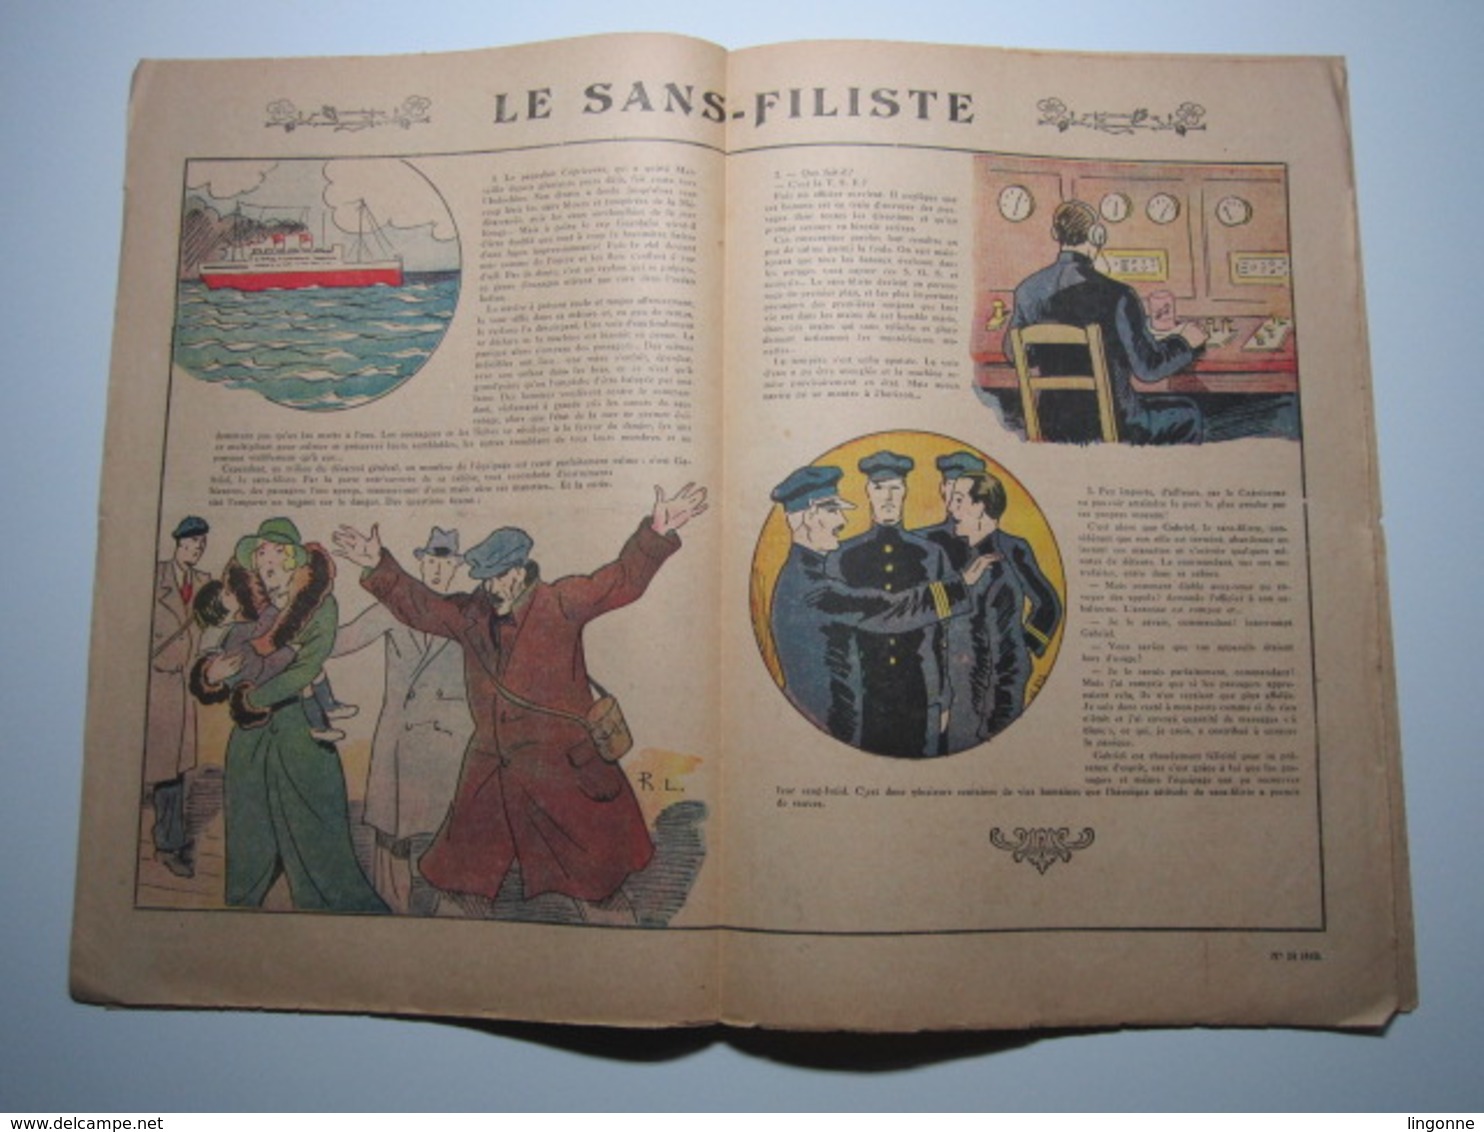 17 Juin 1934 PIERROT JOURNAL DES GARÇONS 25Cts - Pierrot